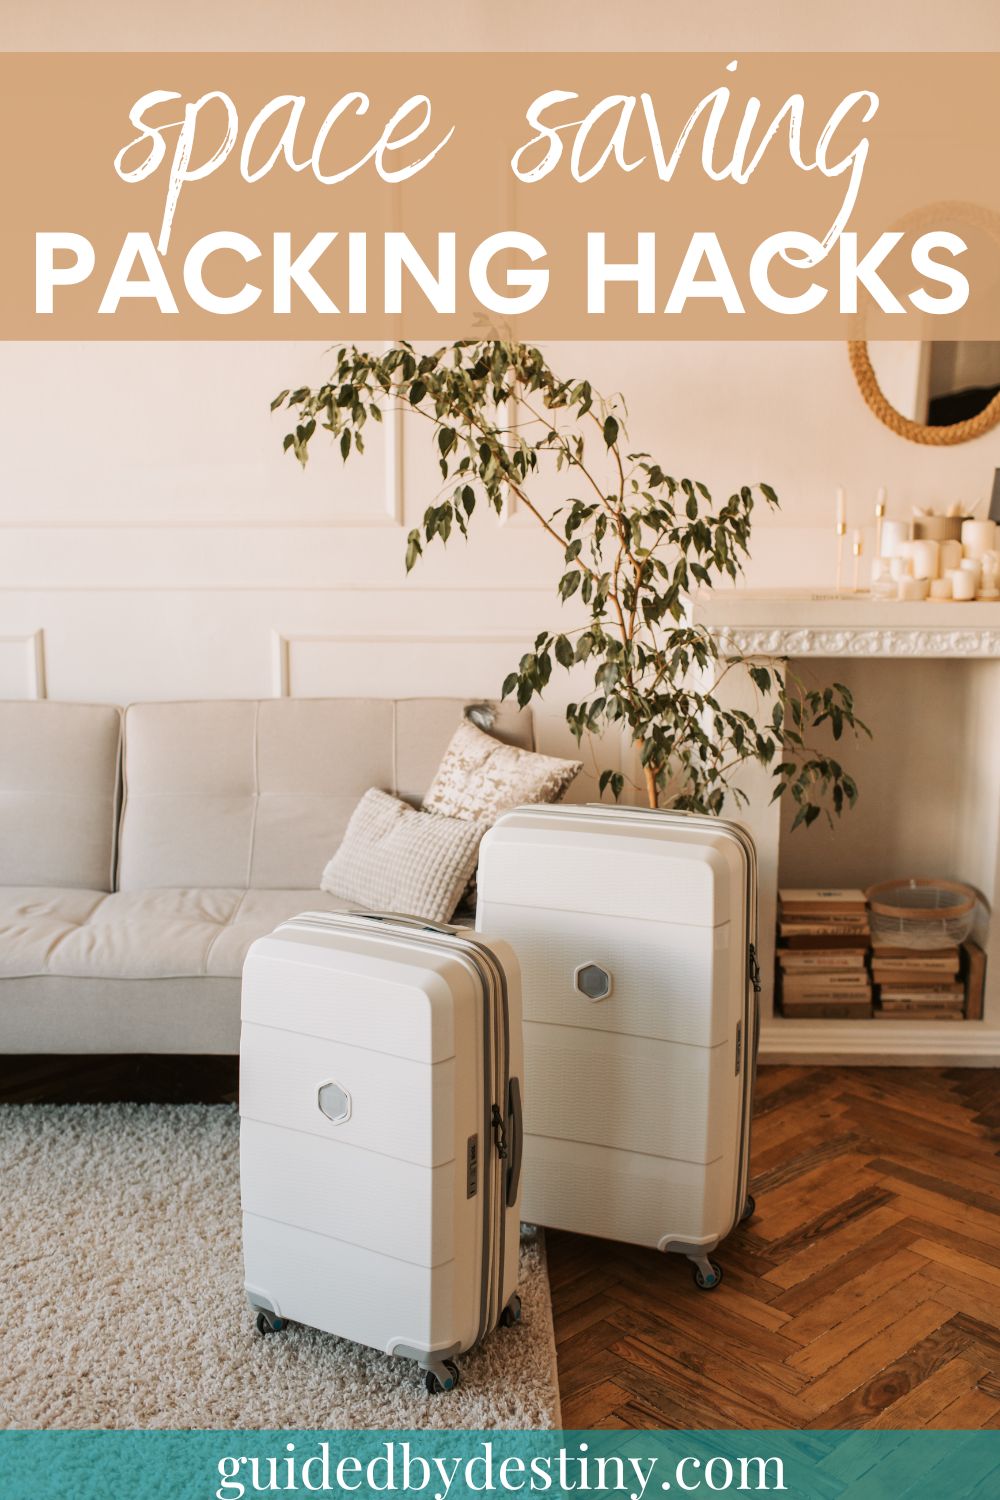 Space saving packing hacks